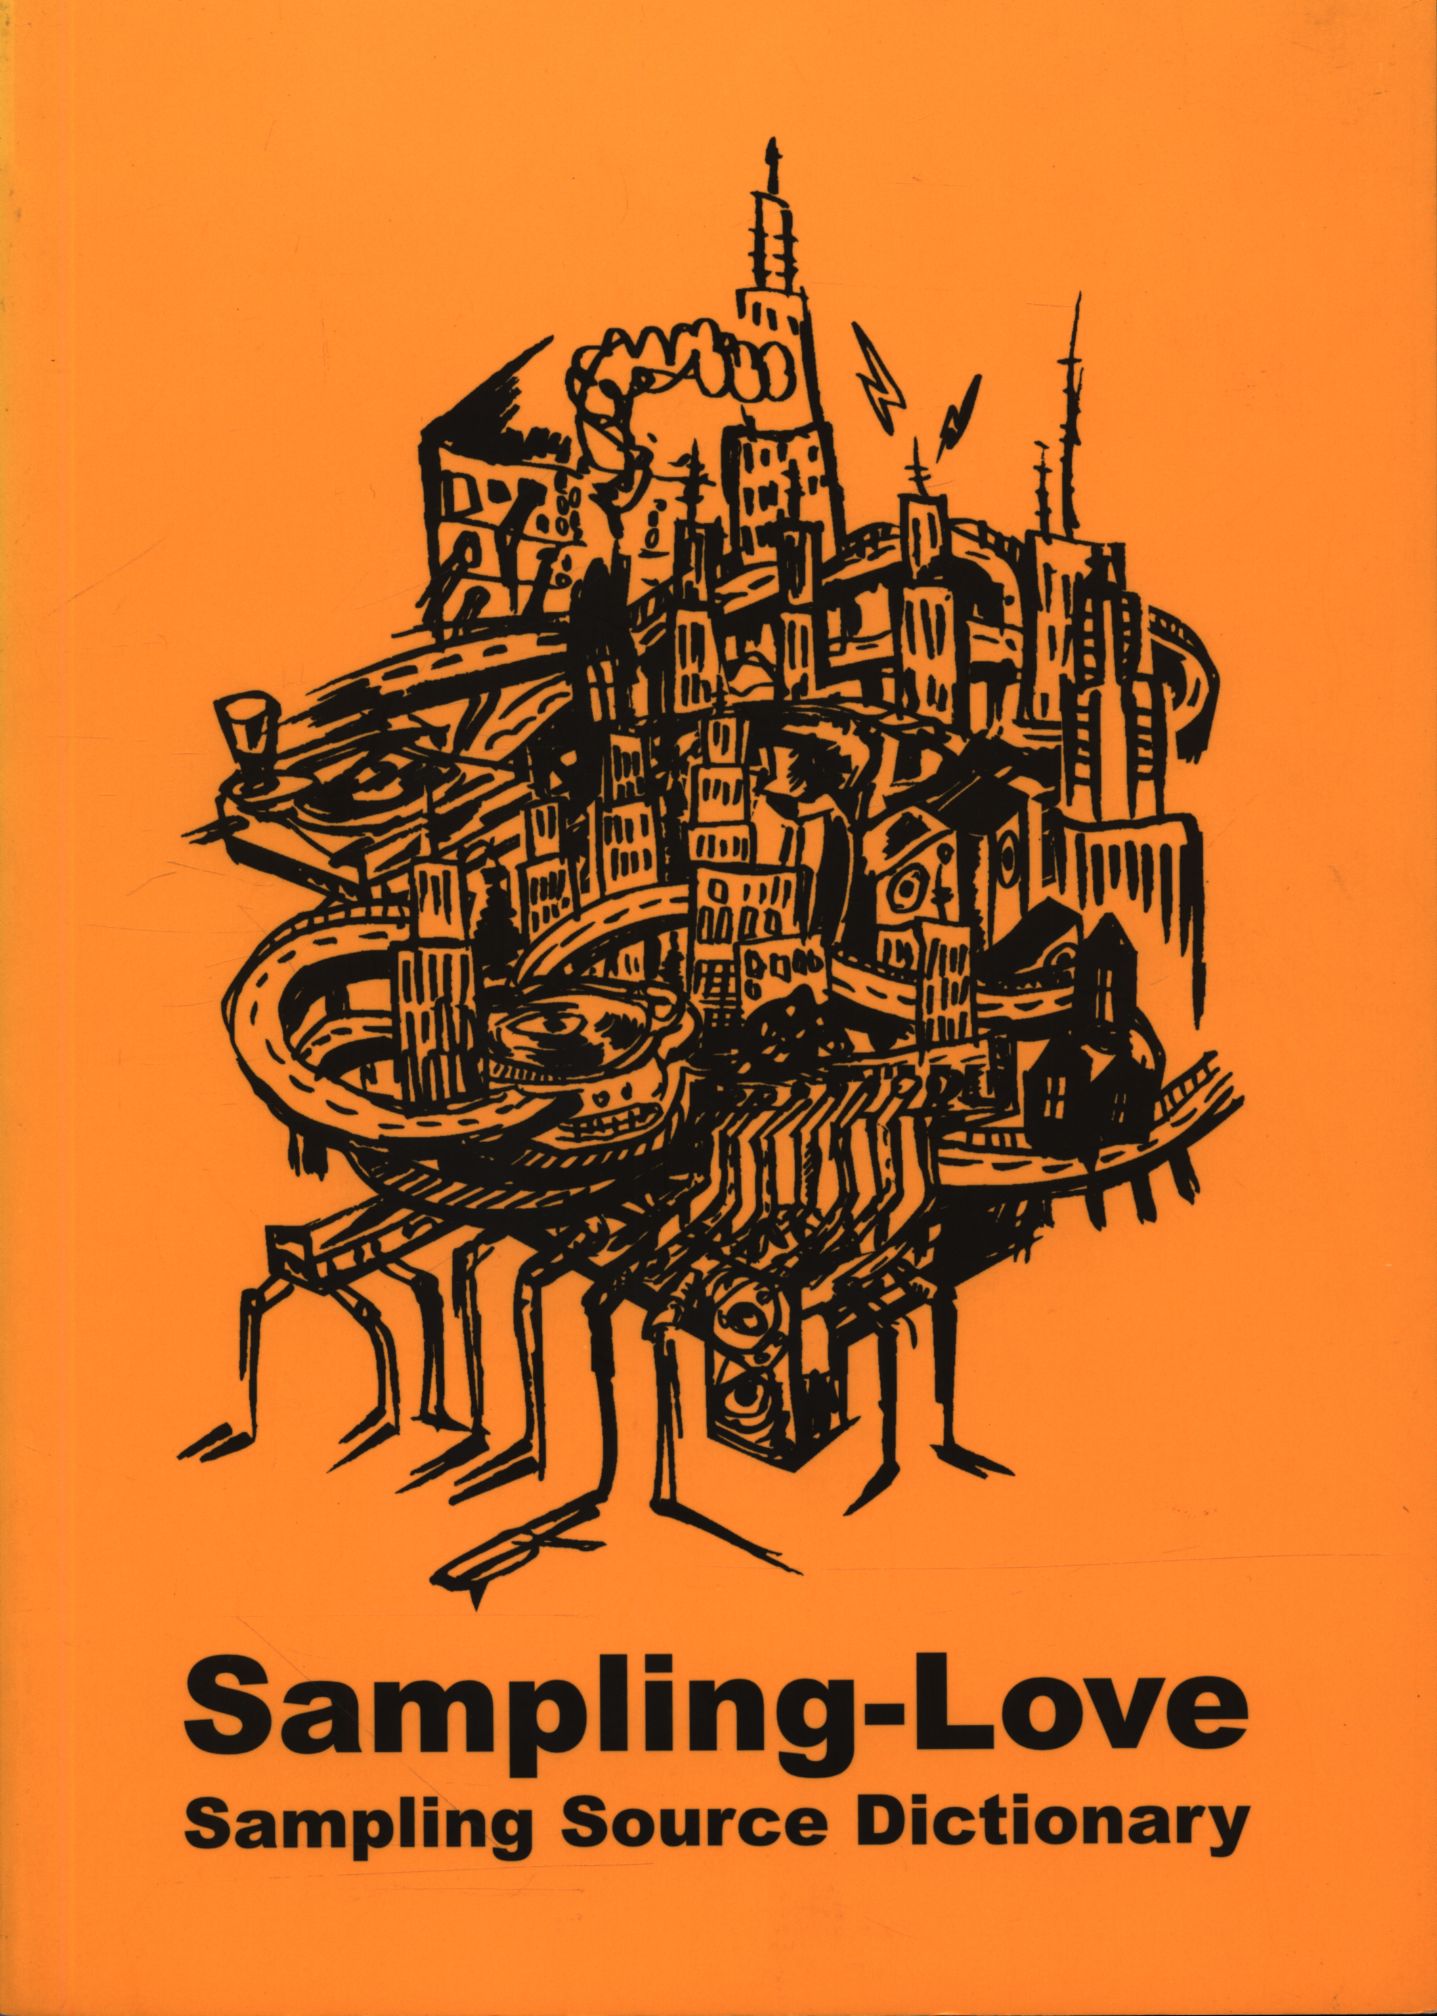 Sampling- Love 元ネタ曲探しヒップホップ